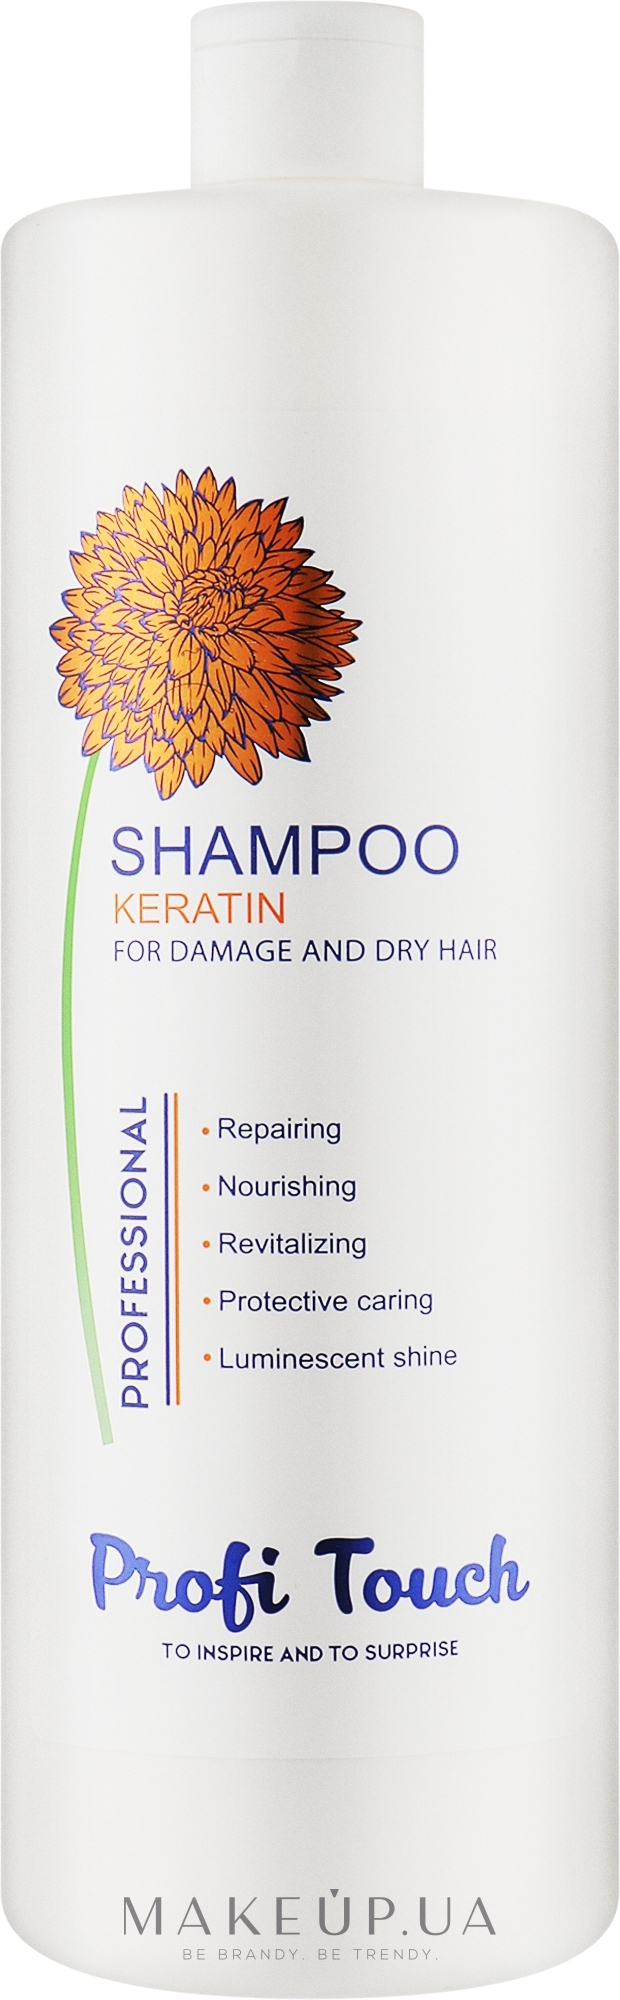 Шампунь для волос "Keratin" - Profi Touch Shampoo  — фото 1000g